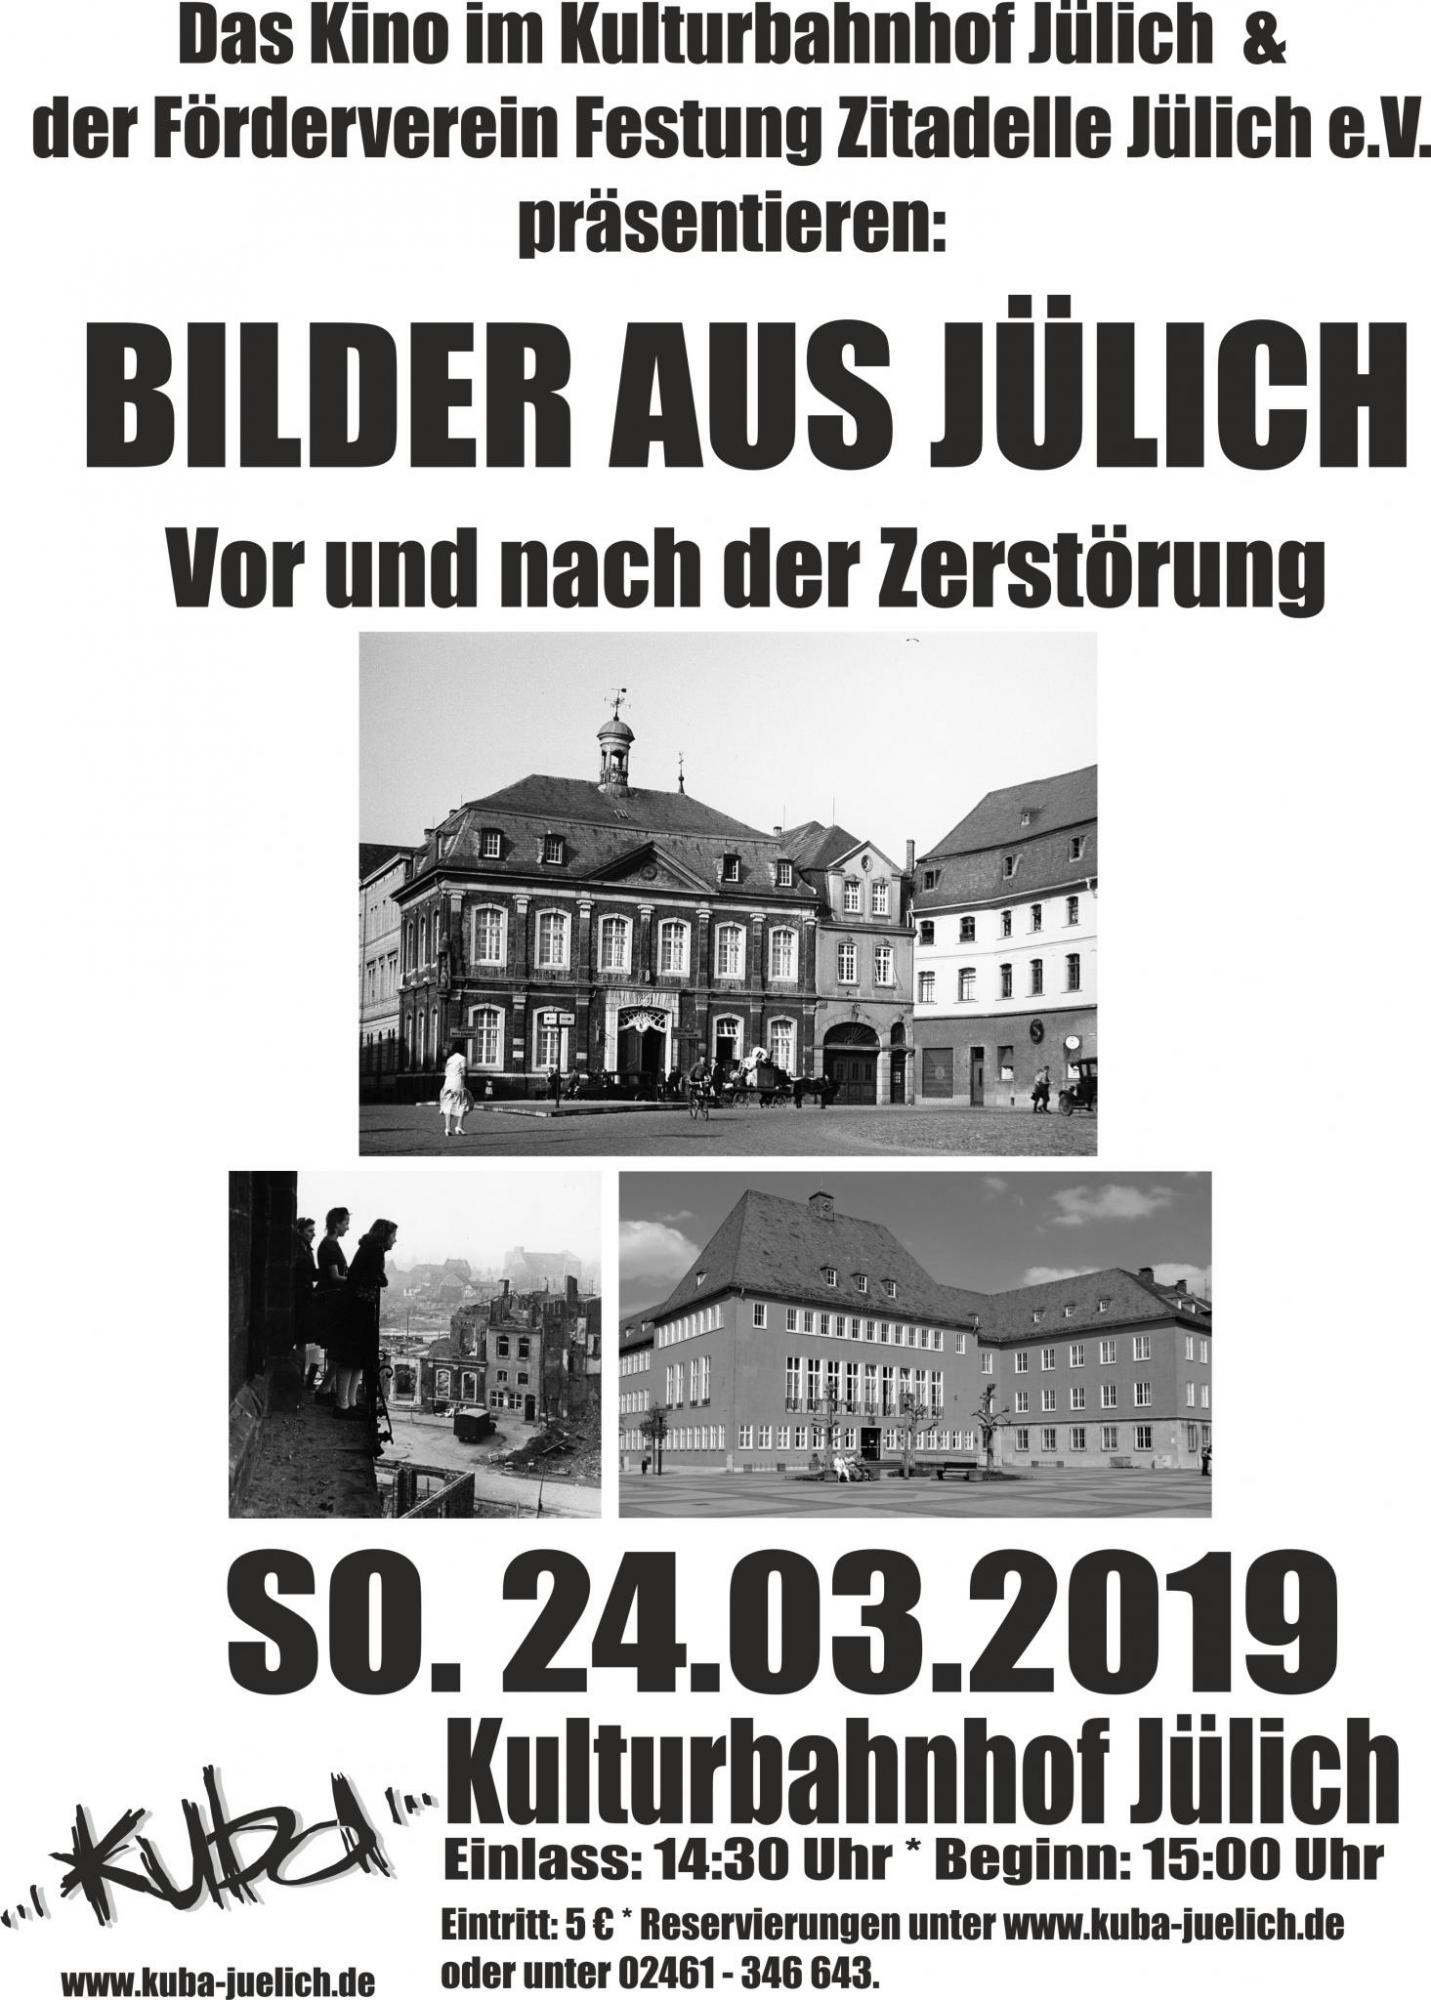 Eine Veranstaltung des KuBa Jülichs und des Förderverein Festung Zitadelle Jülich